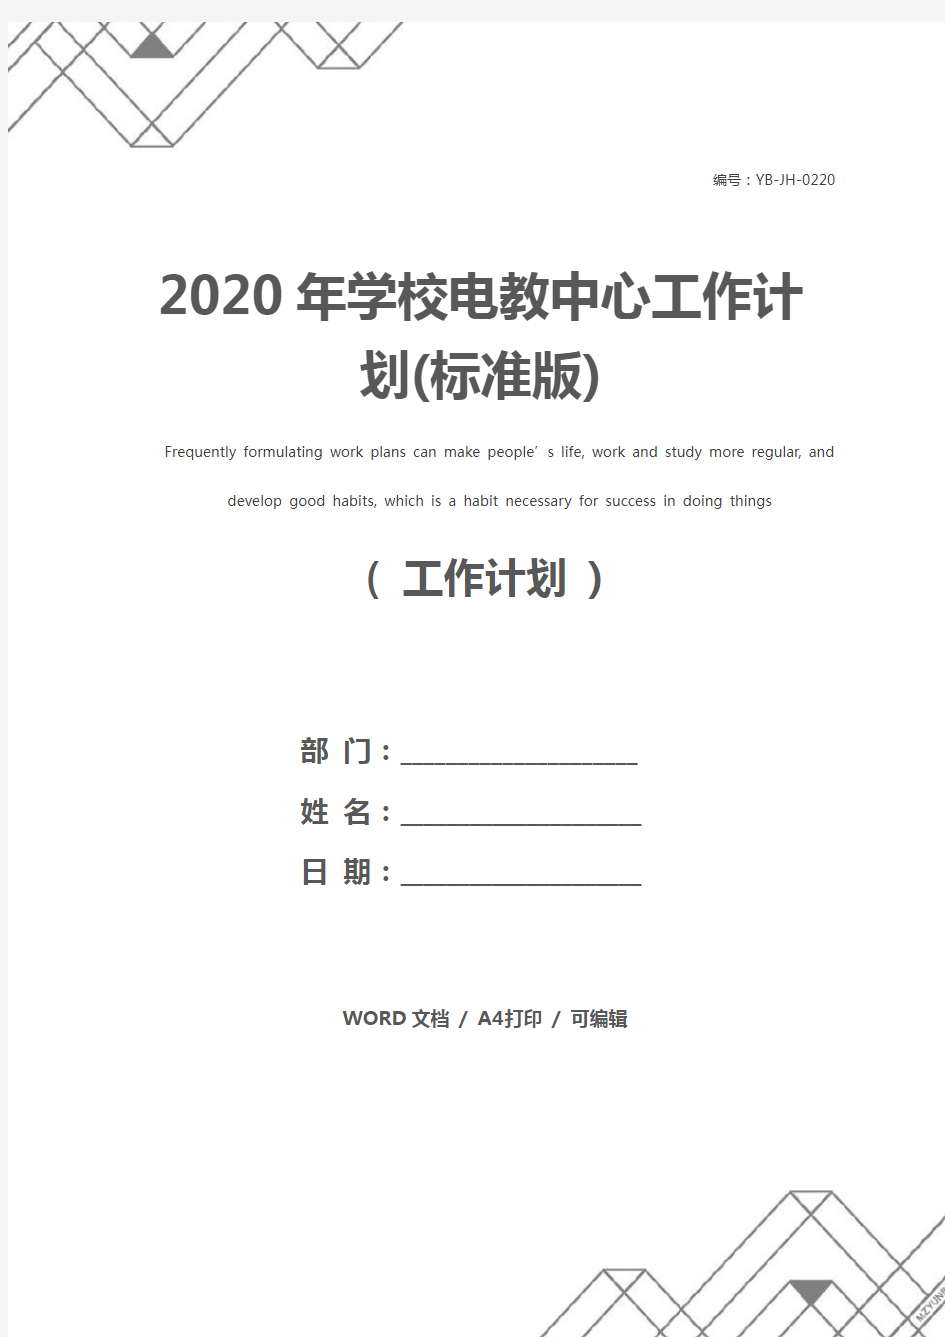 2020年学校电教中心工作计划(标准版)